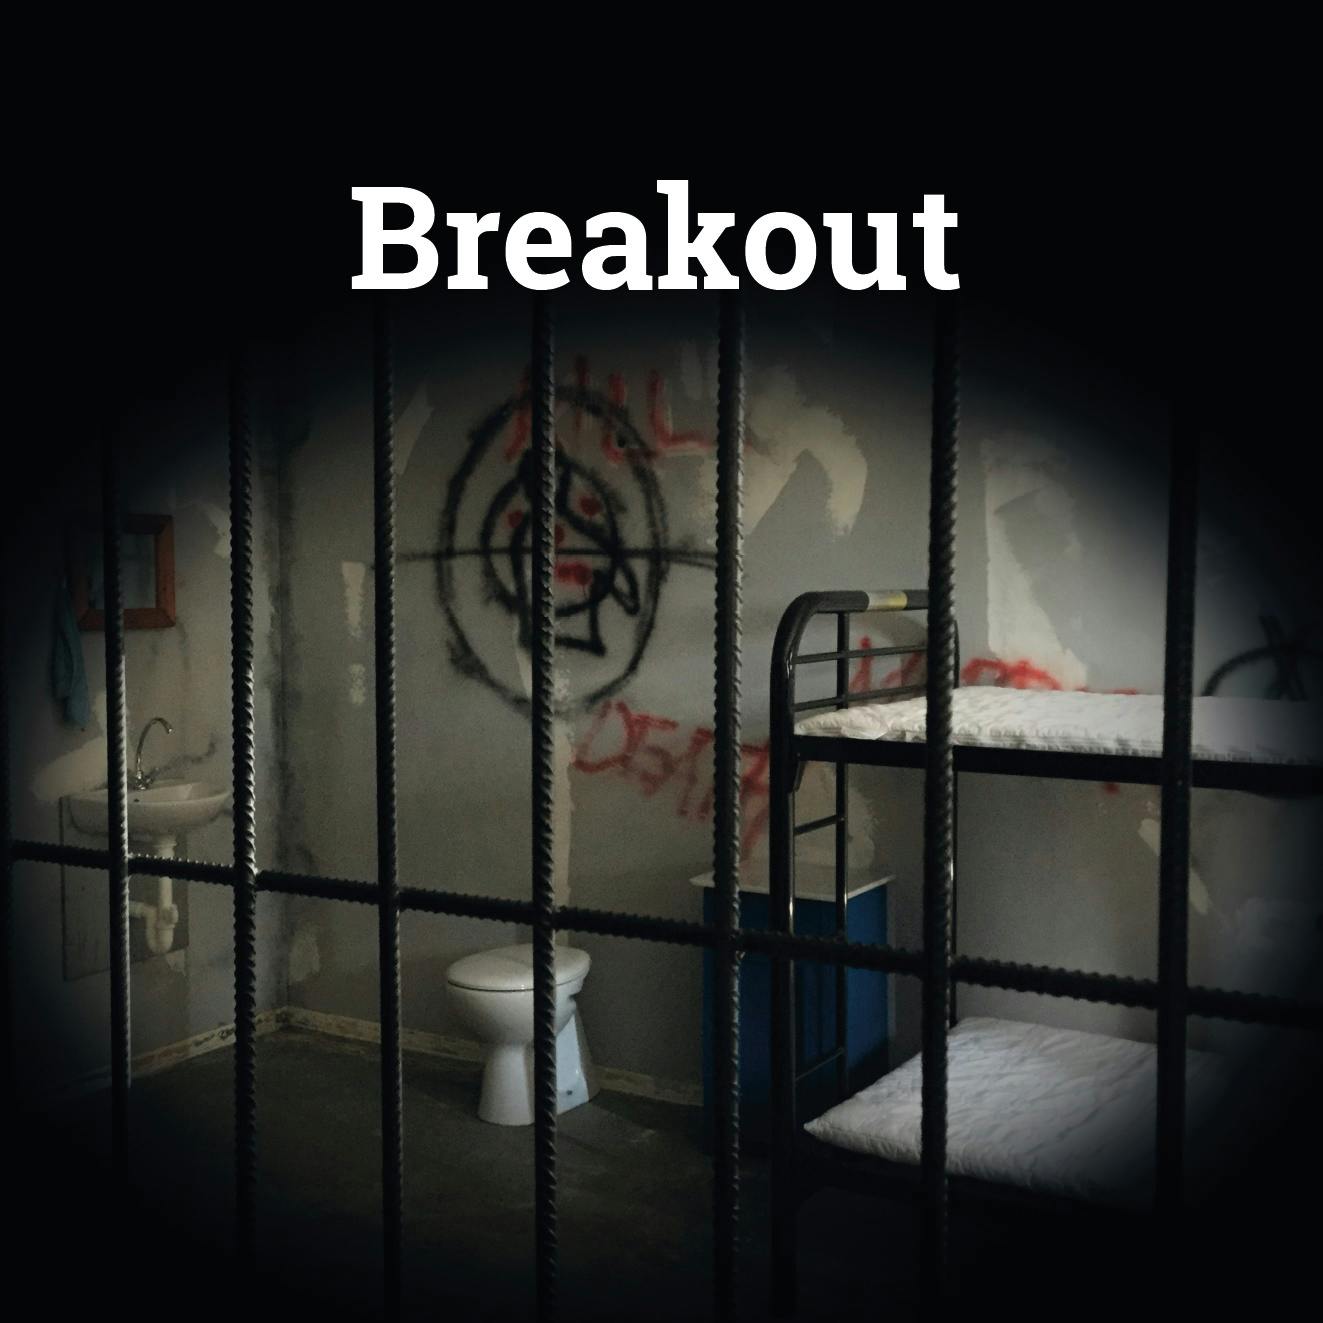 Escape Room game "Breakout" in Saarbrücken